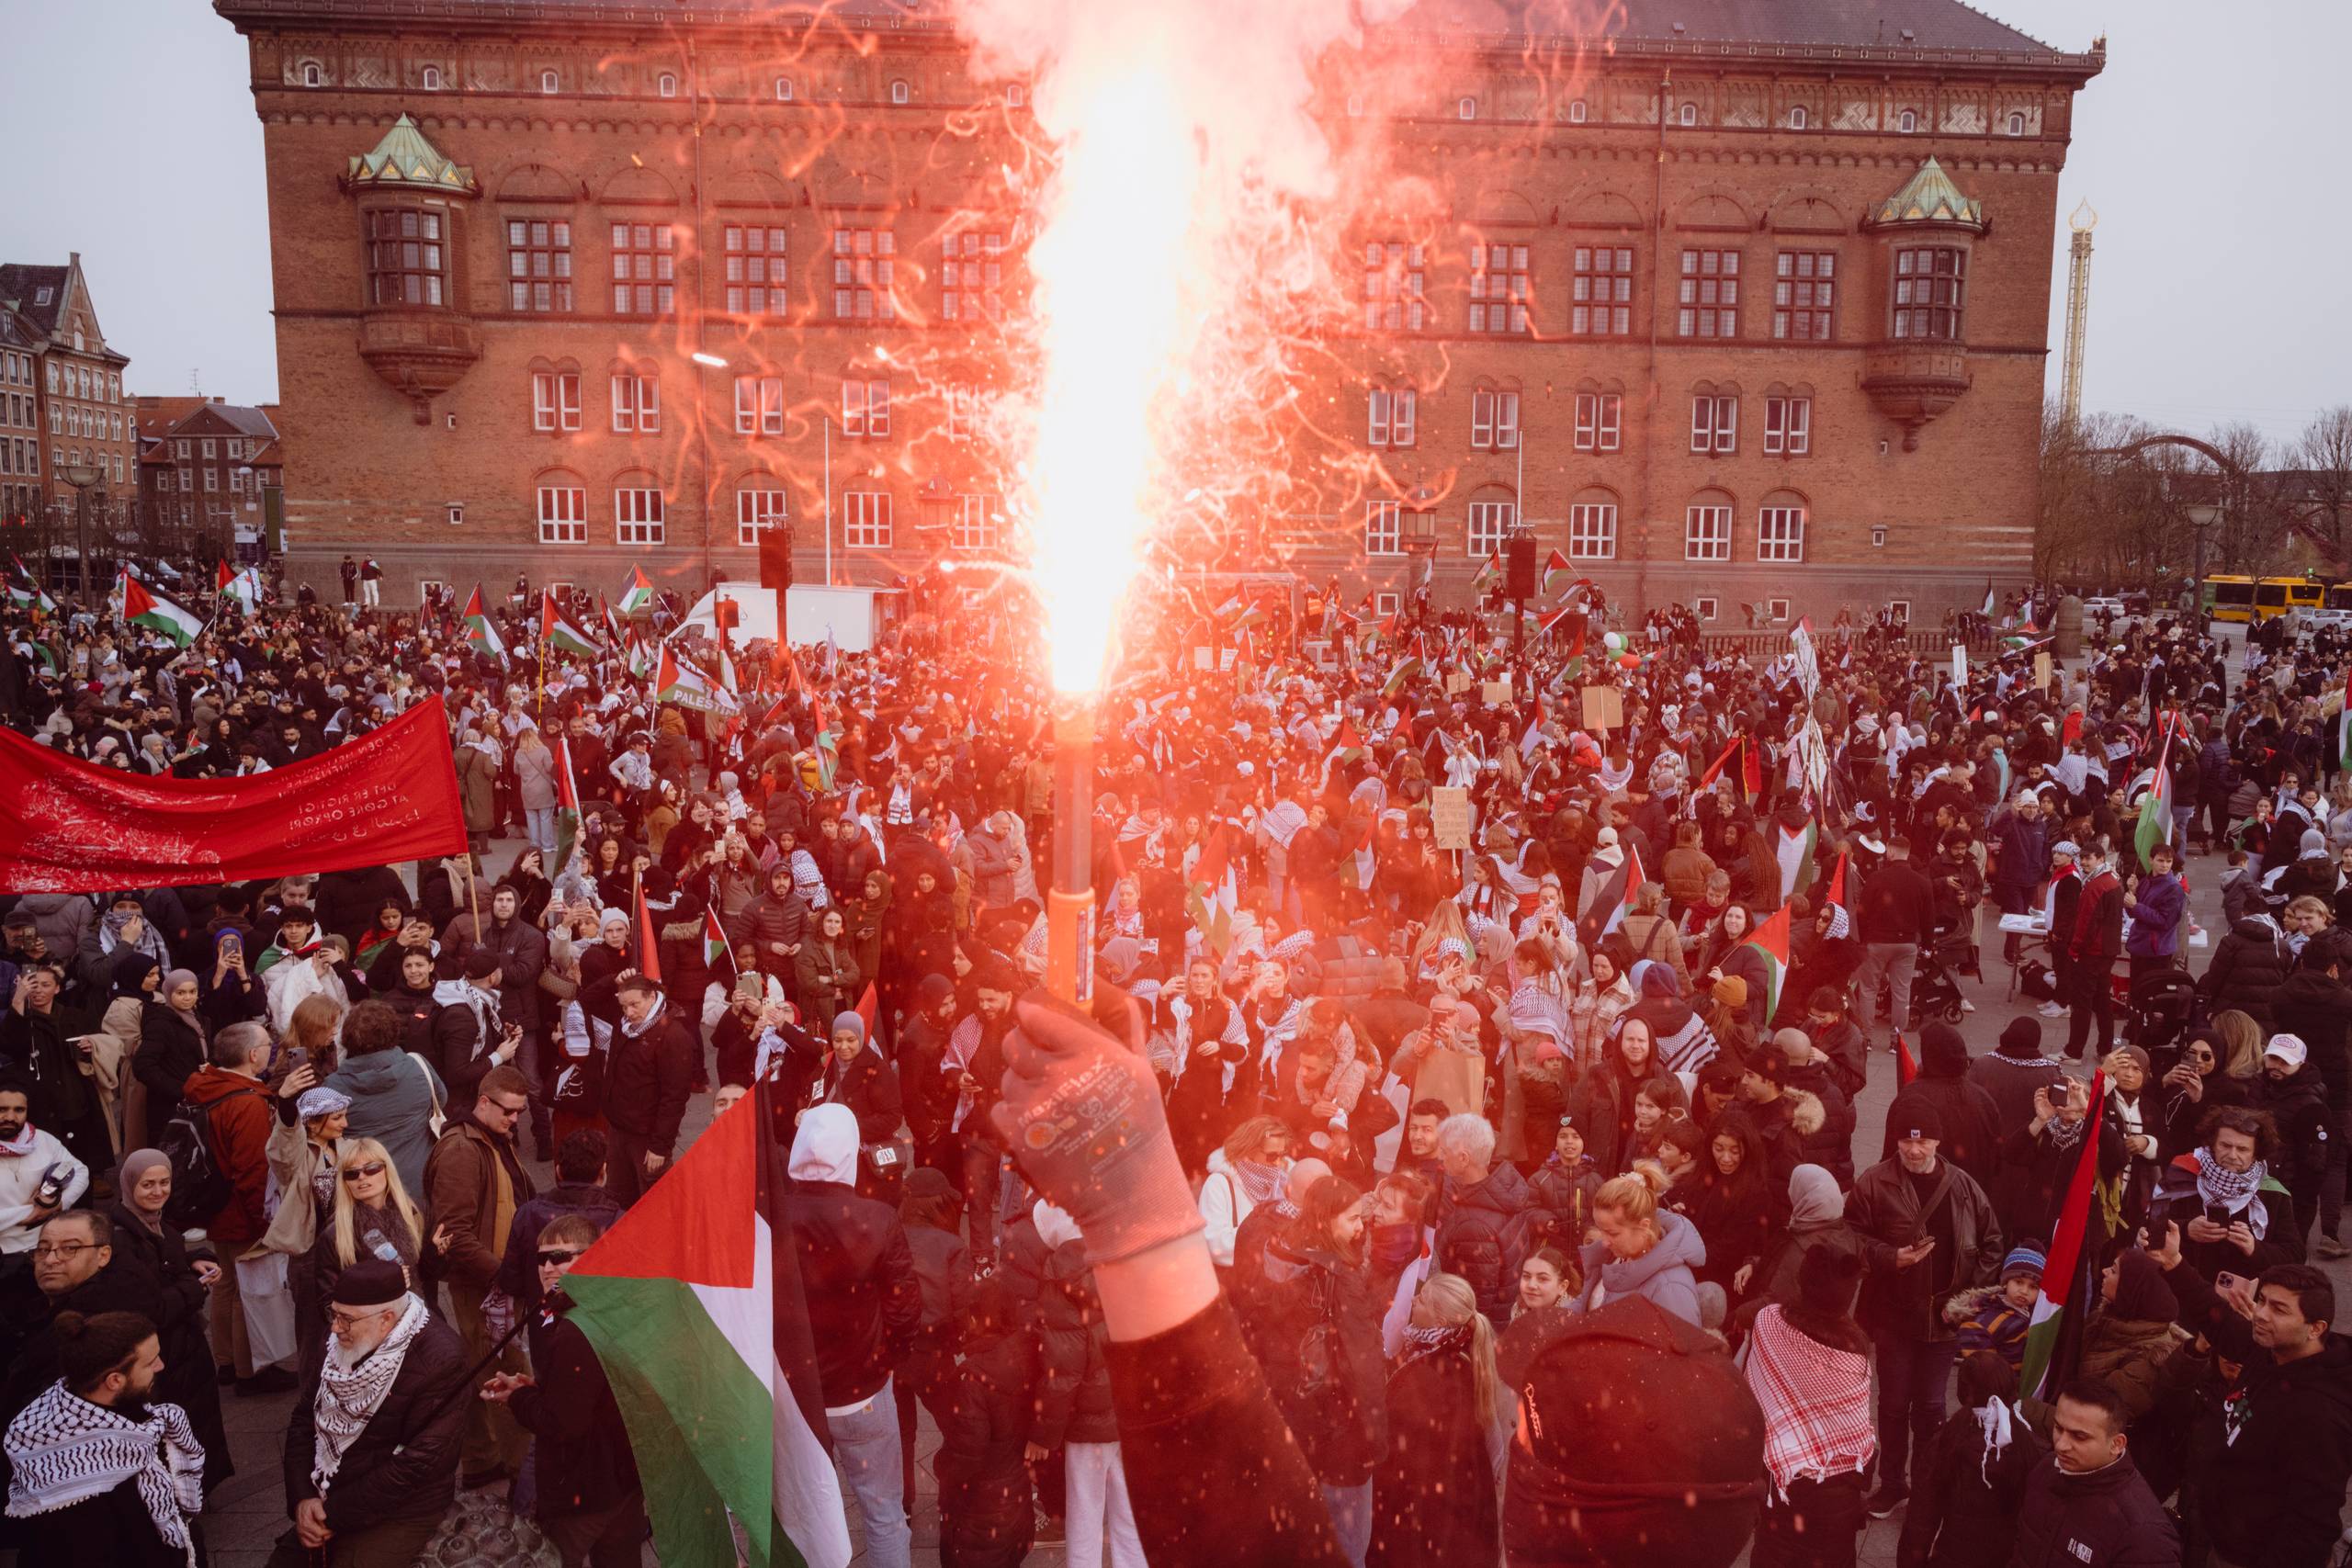 Det er for nemt at kaste fascismekortet, mener Mikkel Riis Jæger oven på bl.a. den store demonstration for Palæstina søndag. Foto: Benjamin Krog.